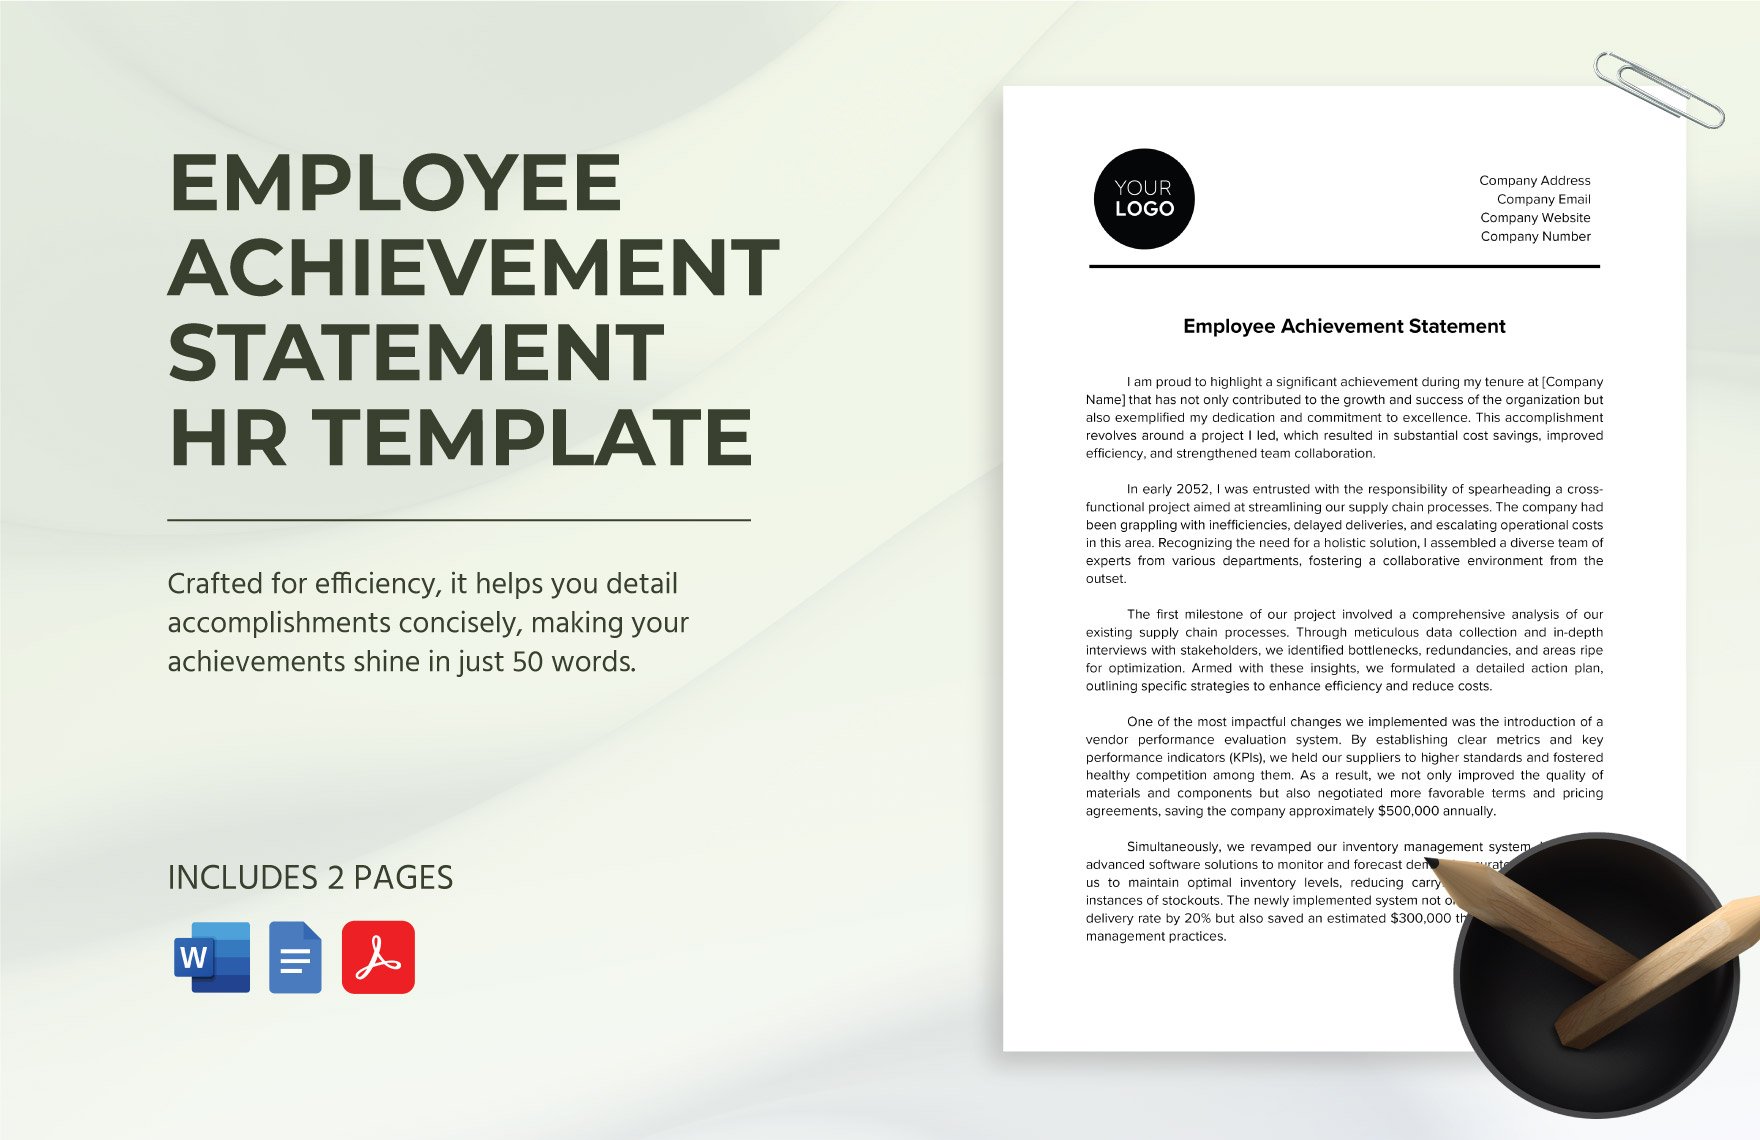 Employee Achievement Statement HR Template